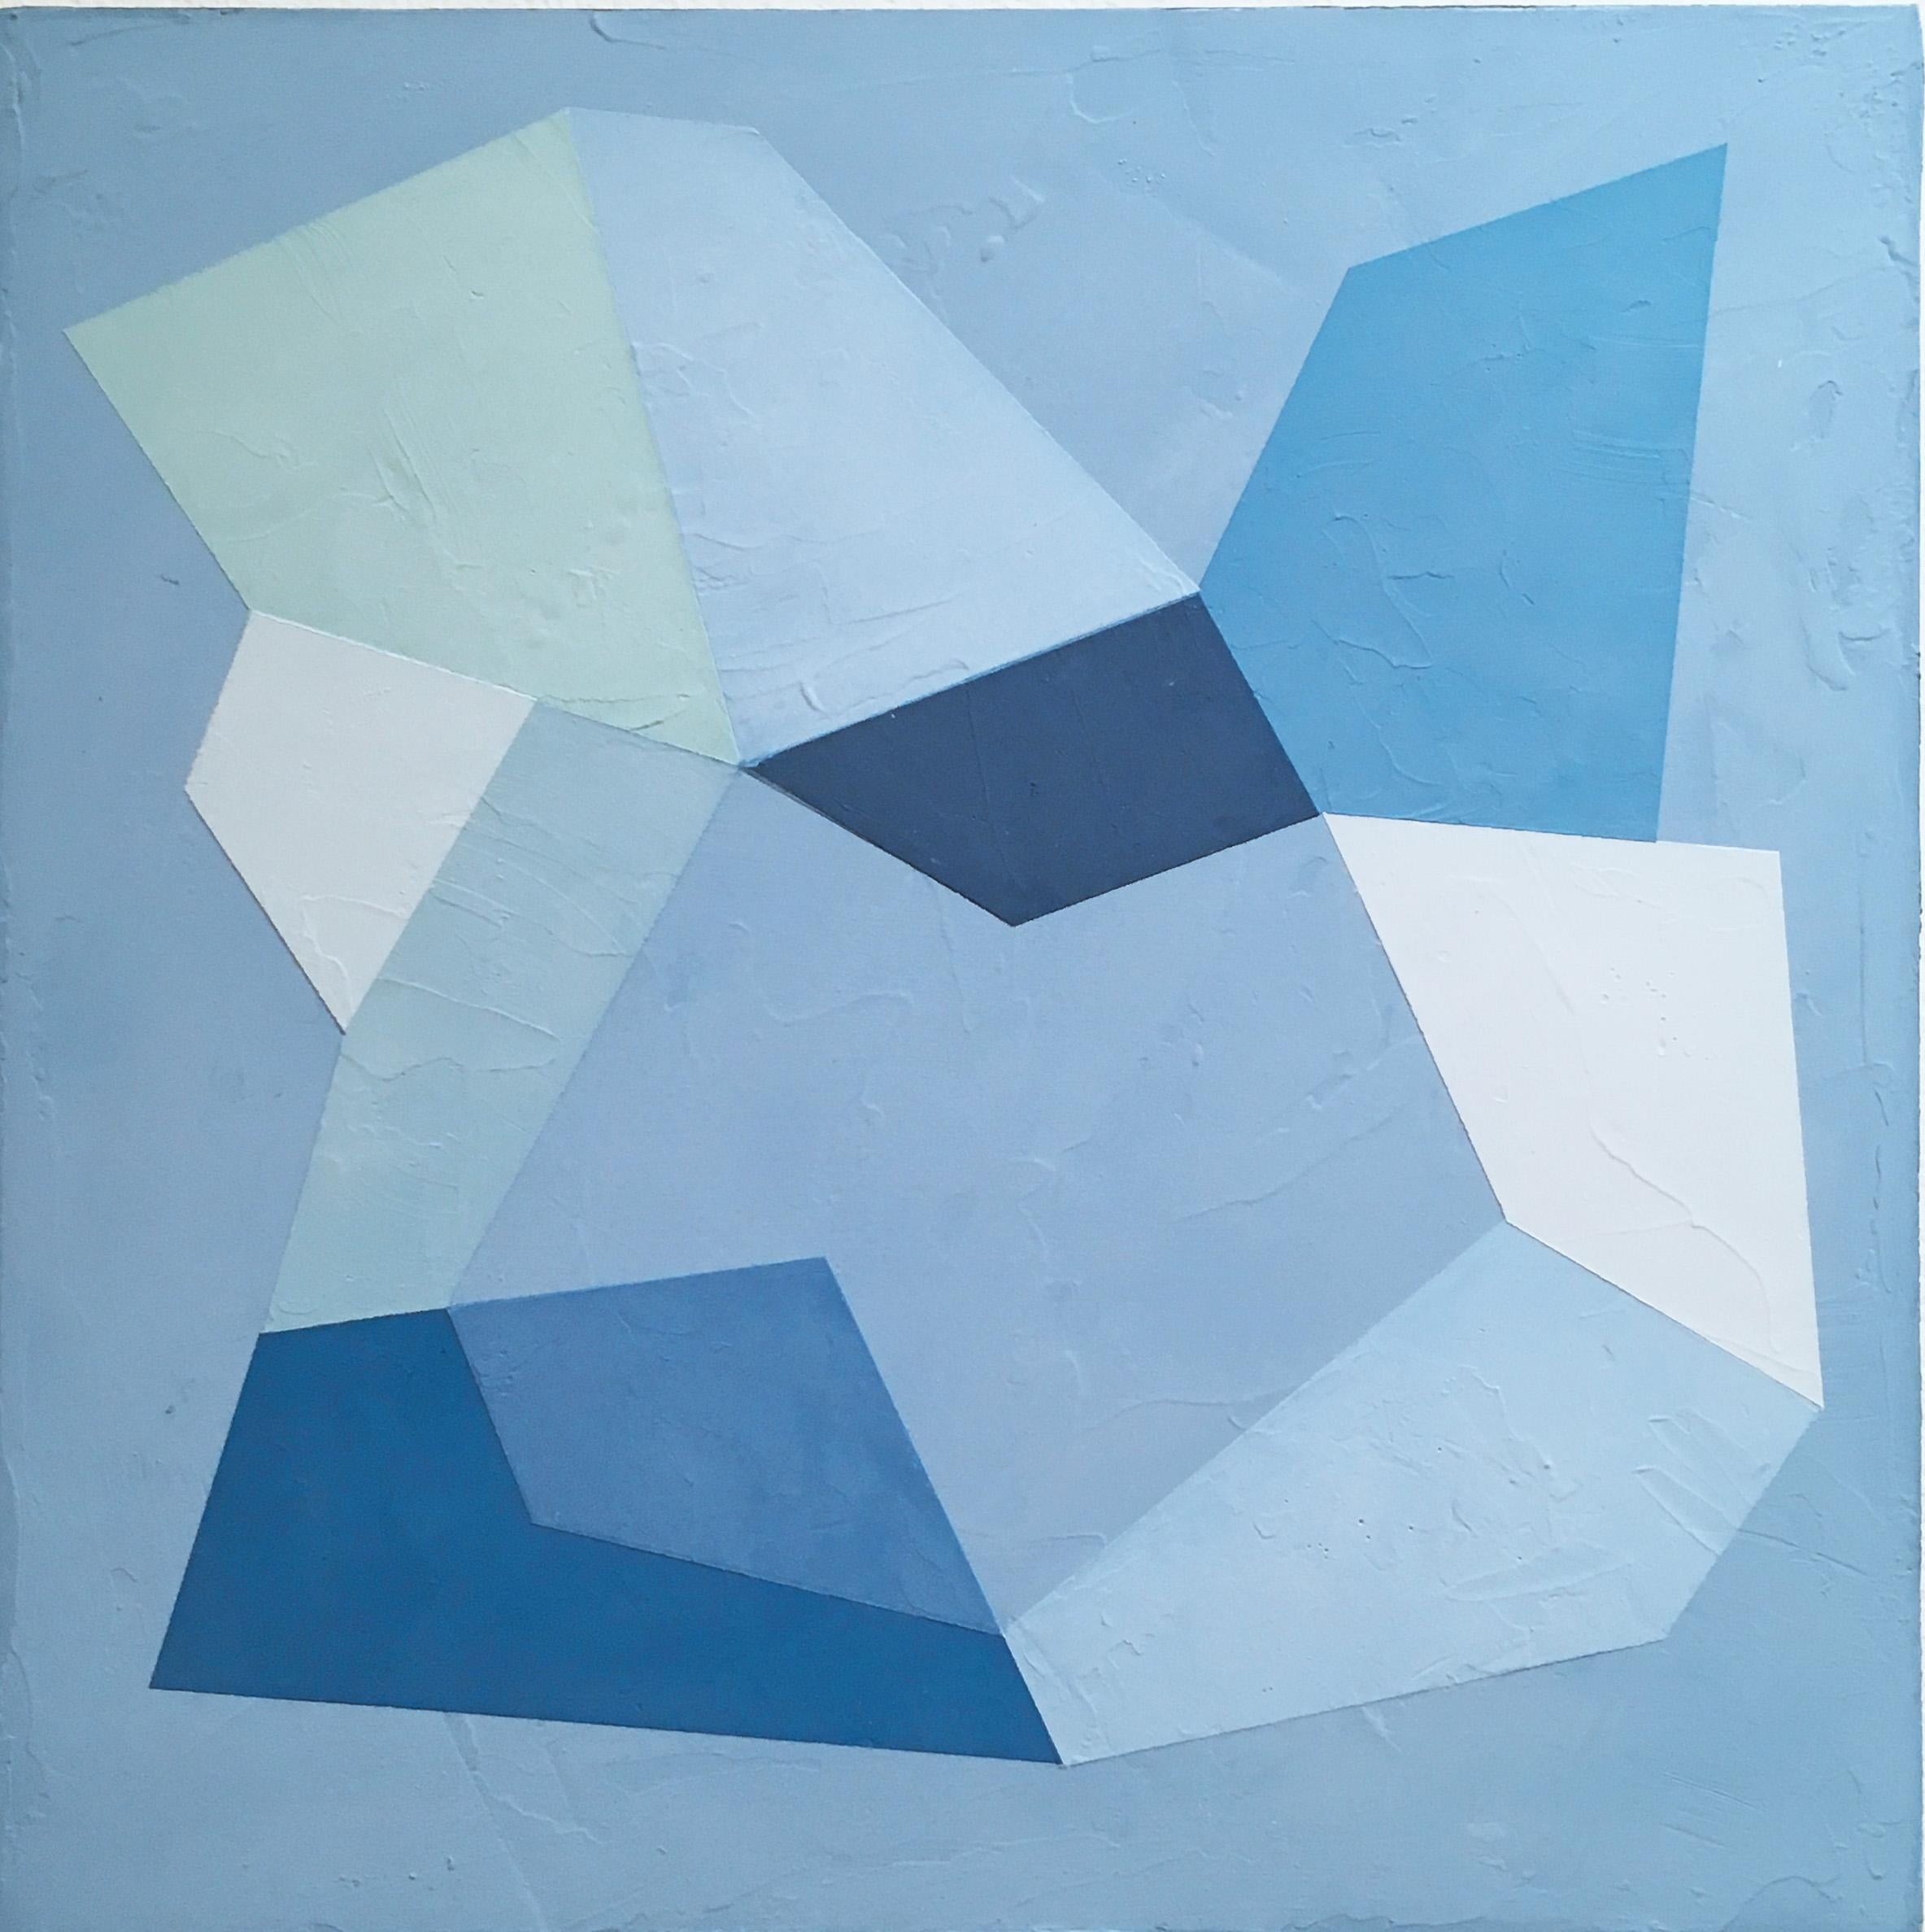 Blaues Tablett III, 2020, Abstrakte Geometrie, ungegenständlich, Gips, blau, weiß